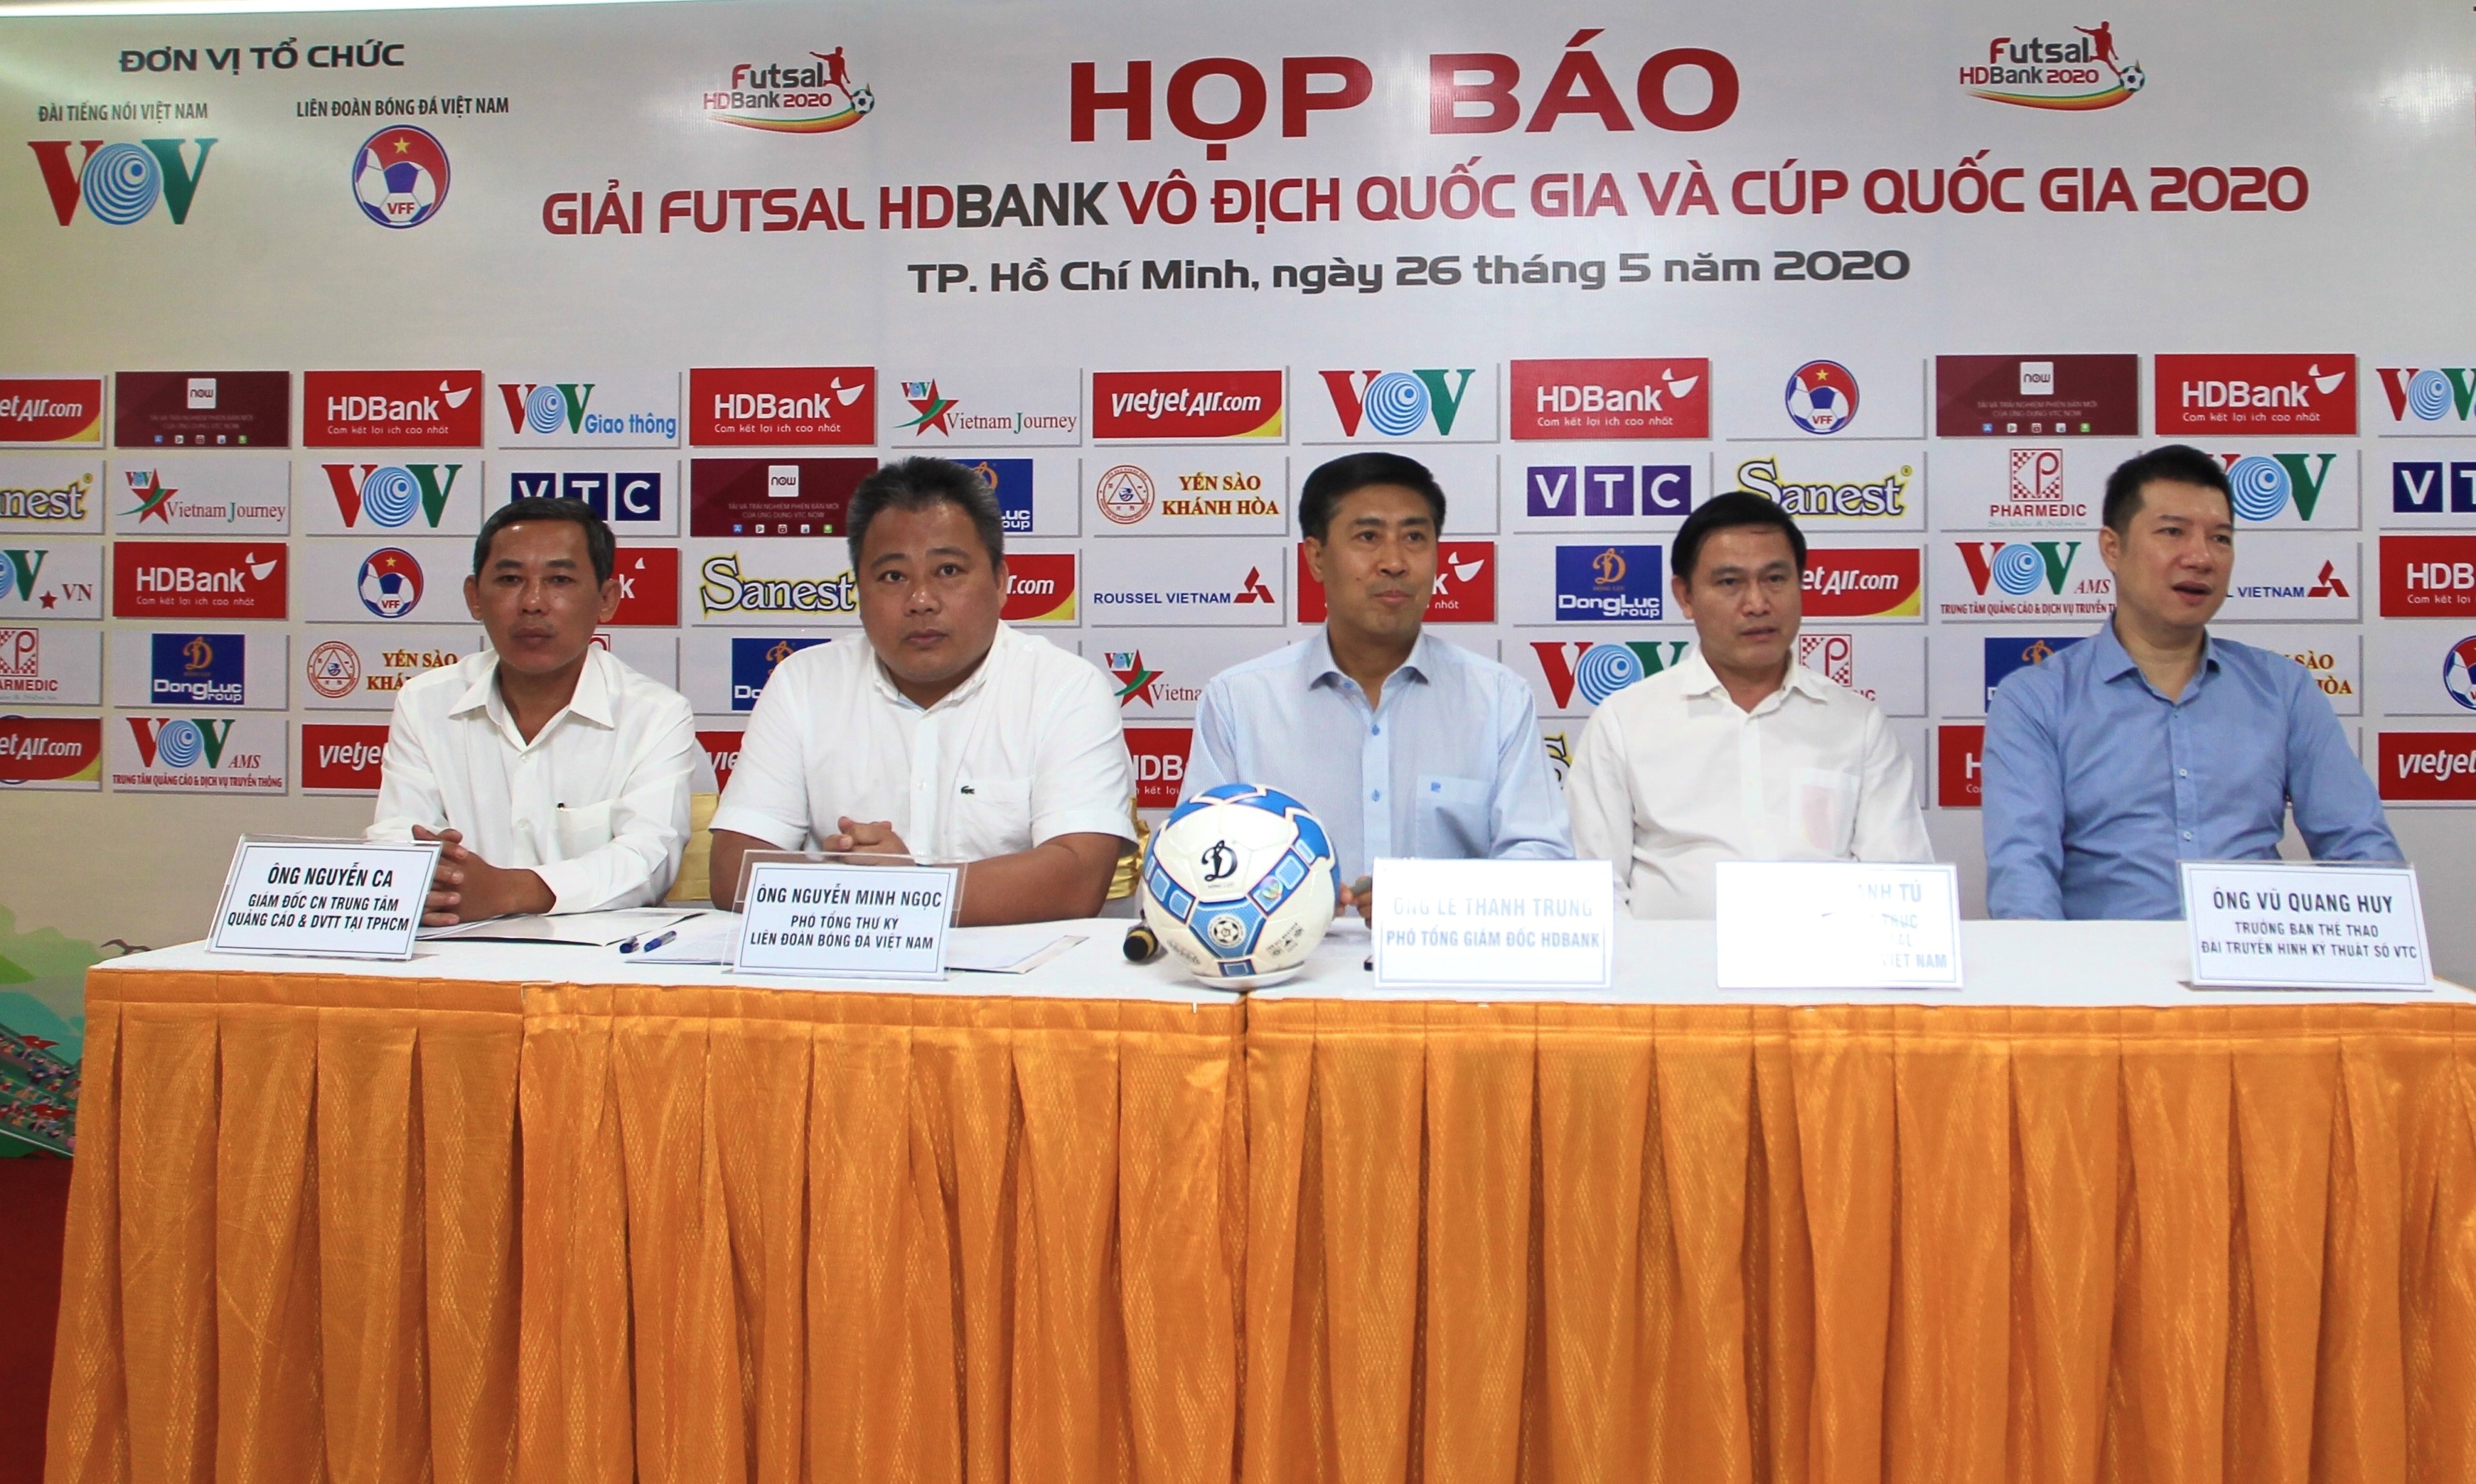 Vô địch quốc gia Futsal HDBank sẽ tham dự giải các CLB châu Á